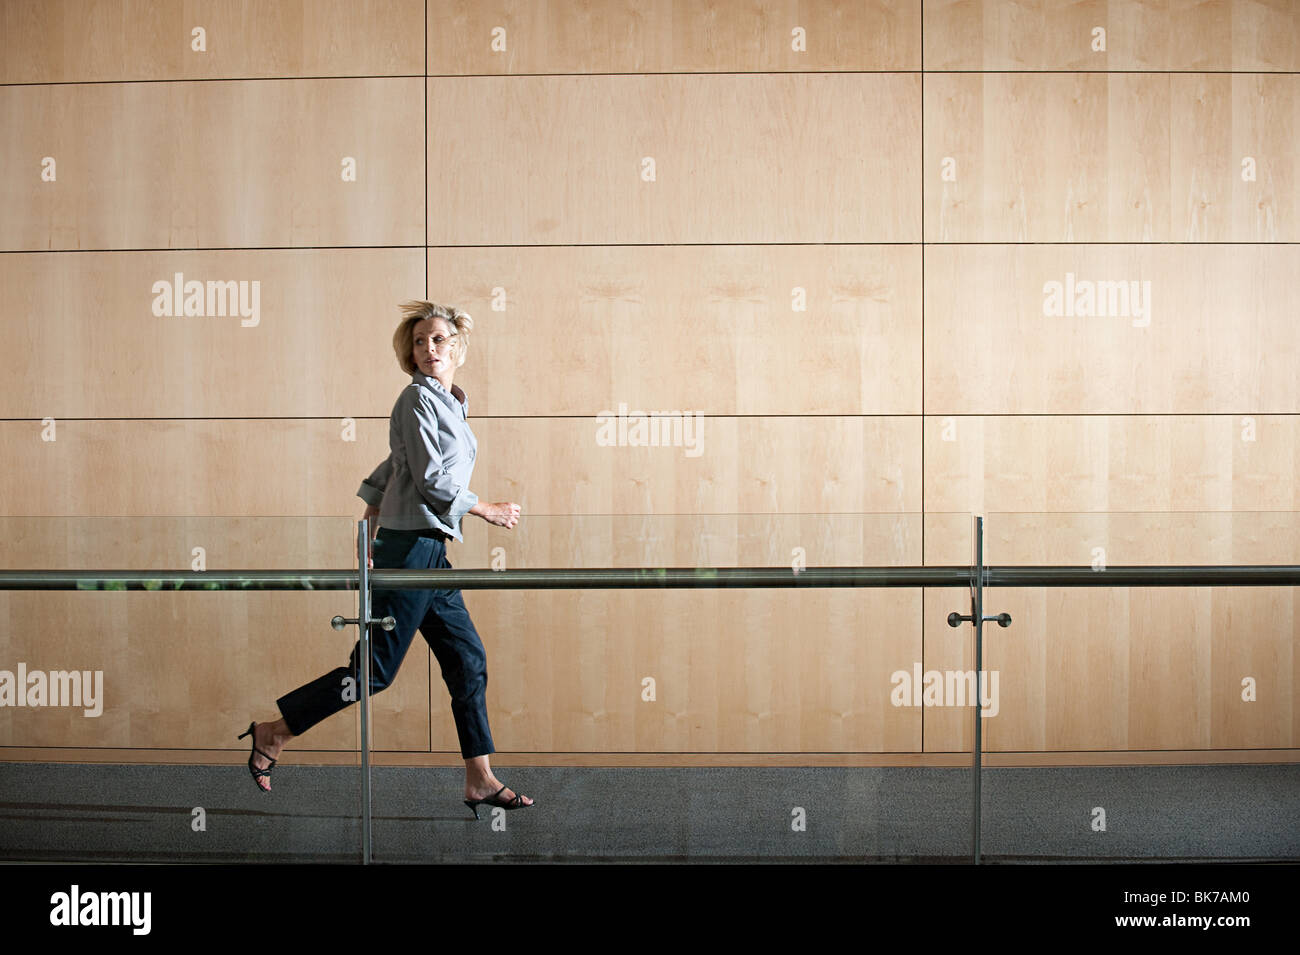 Businesswoman running through corridor Stock Photo